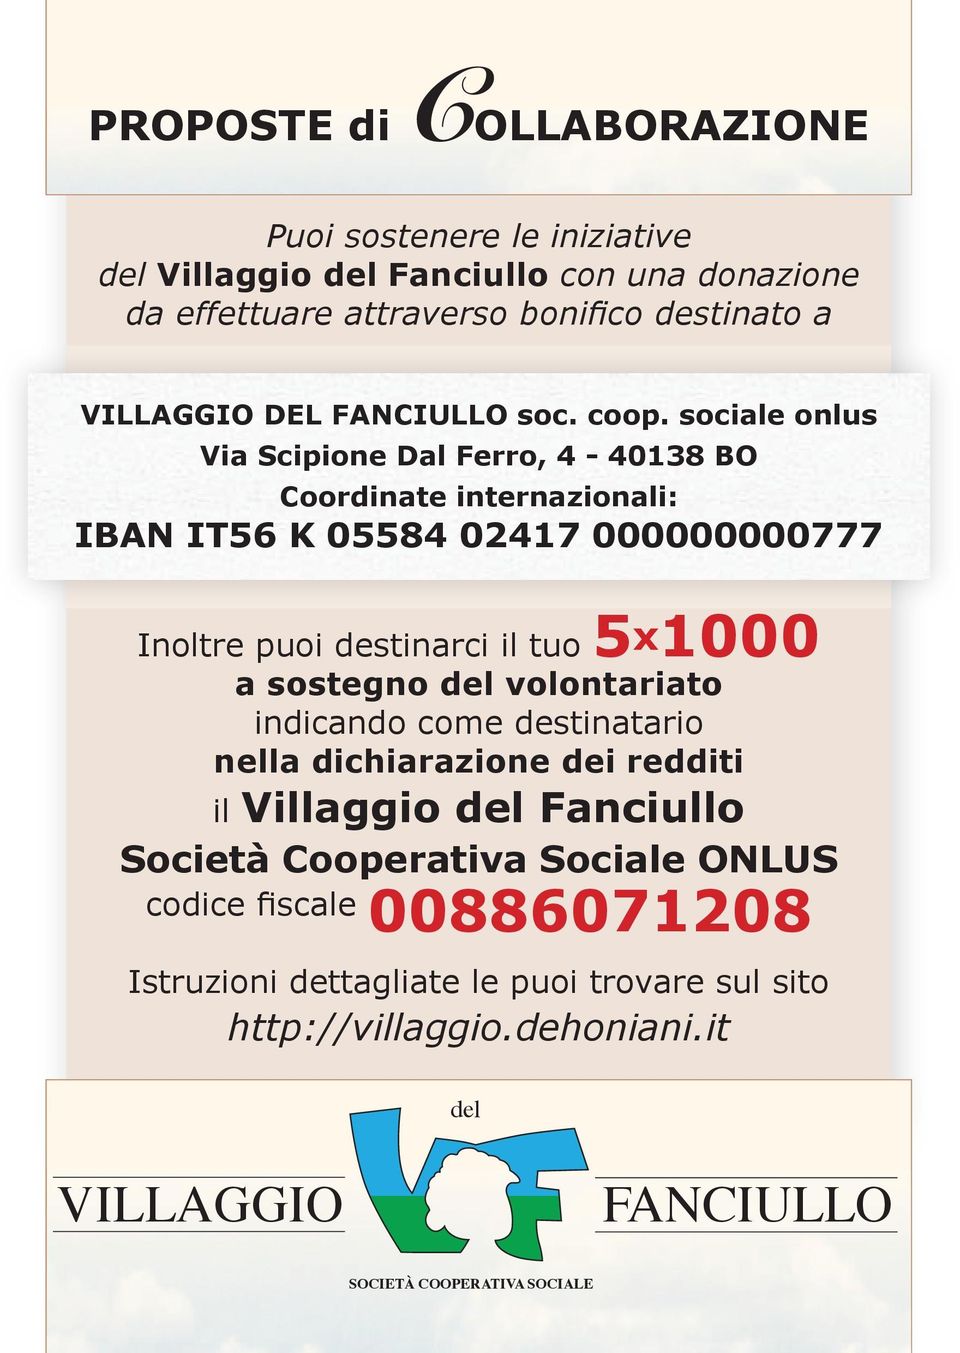 sociale onlus Via Scipione Dal Ferro, 4-40138 BO Coordinate internazionali: IBAN IT56 K 05584 02417 000000000777 Inoltre puoi destinarci il tuo 5x1000 a